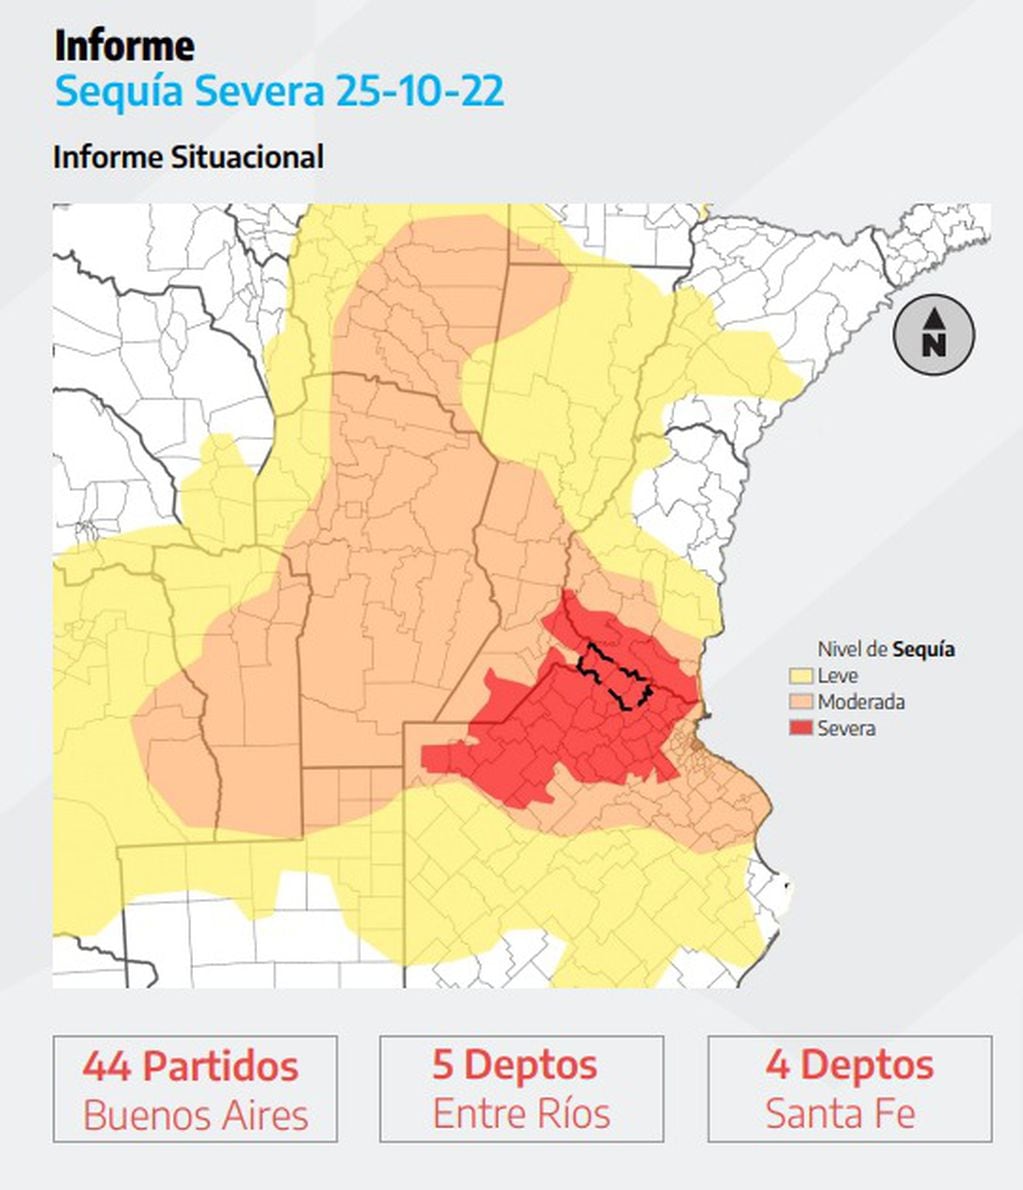 Las regiones de Buenos Aires, Entre Ríos y Santa Fe son las más afectadas.